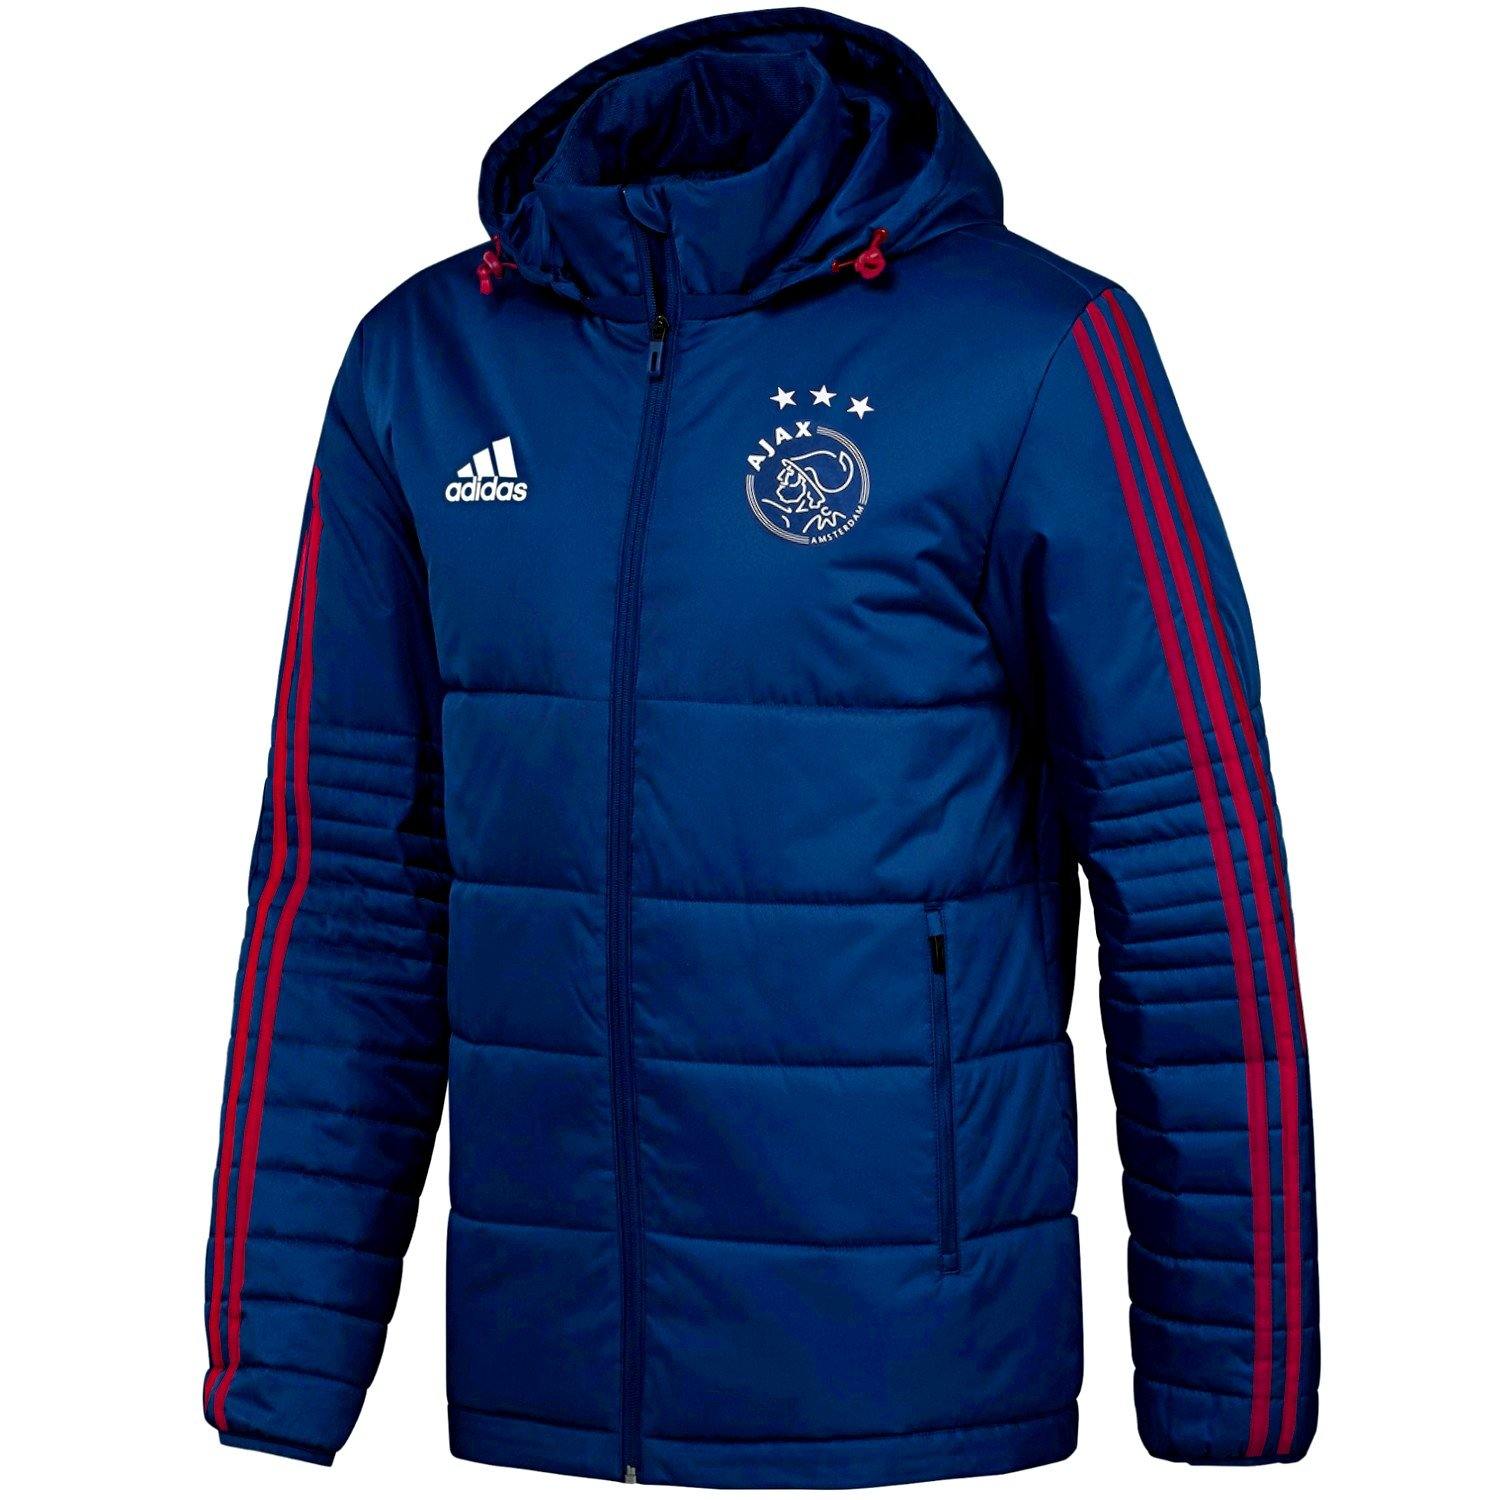 Ajax winter training soccer jacket - – SoccerTracksuits.com